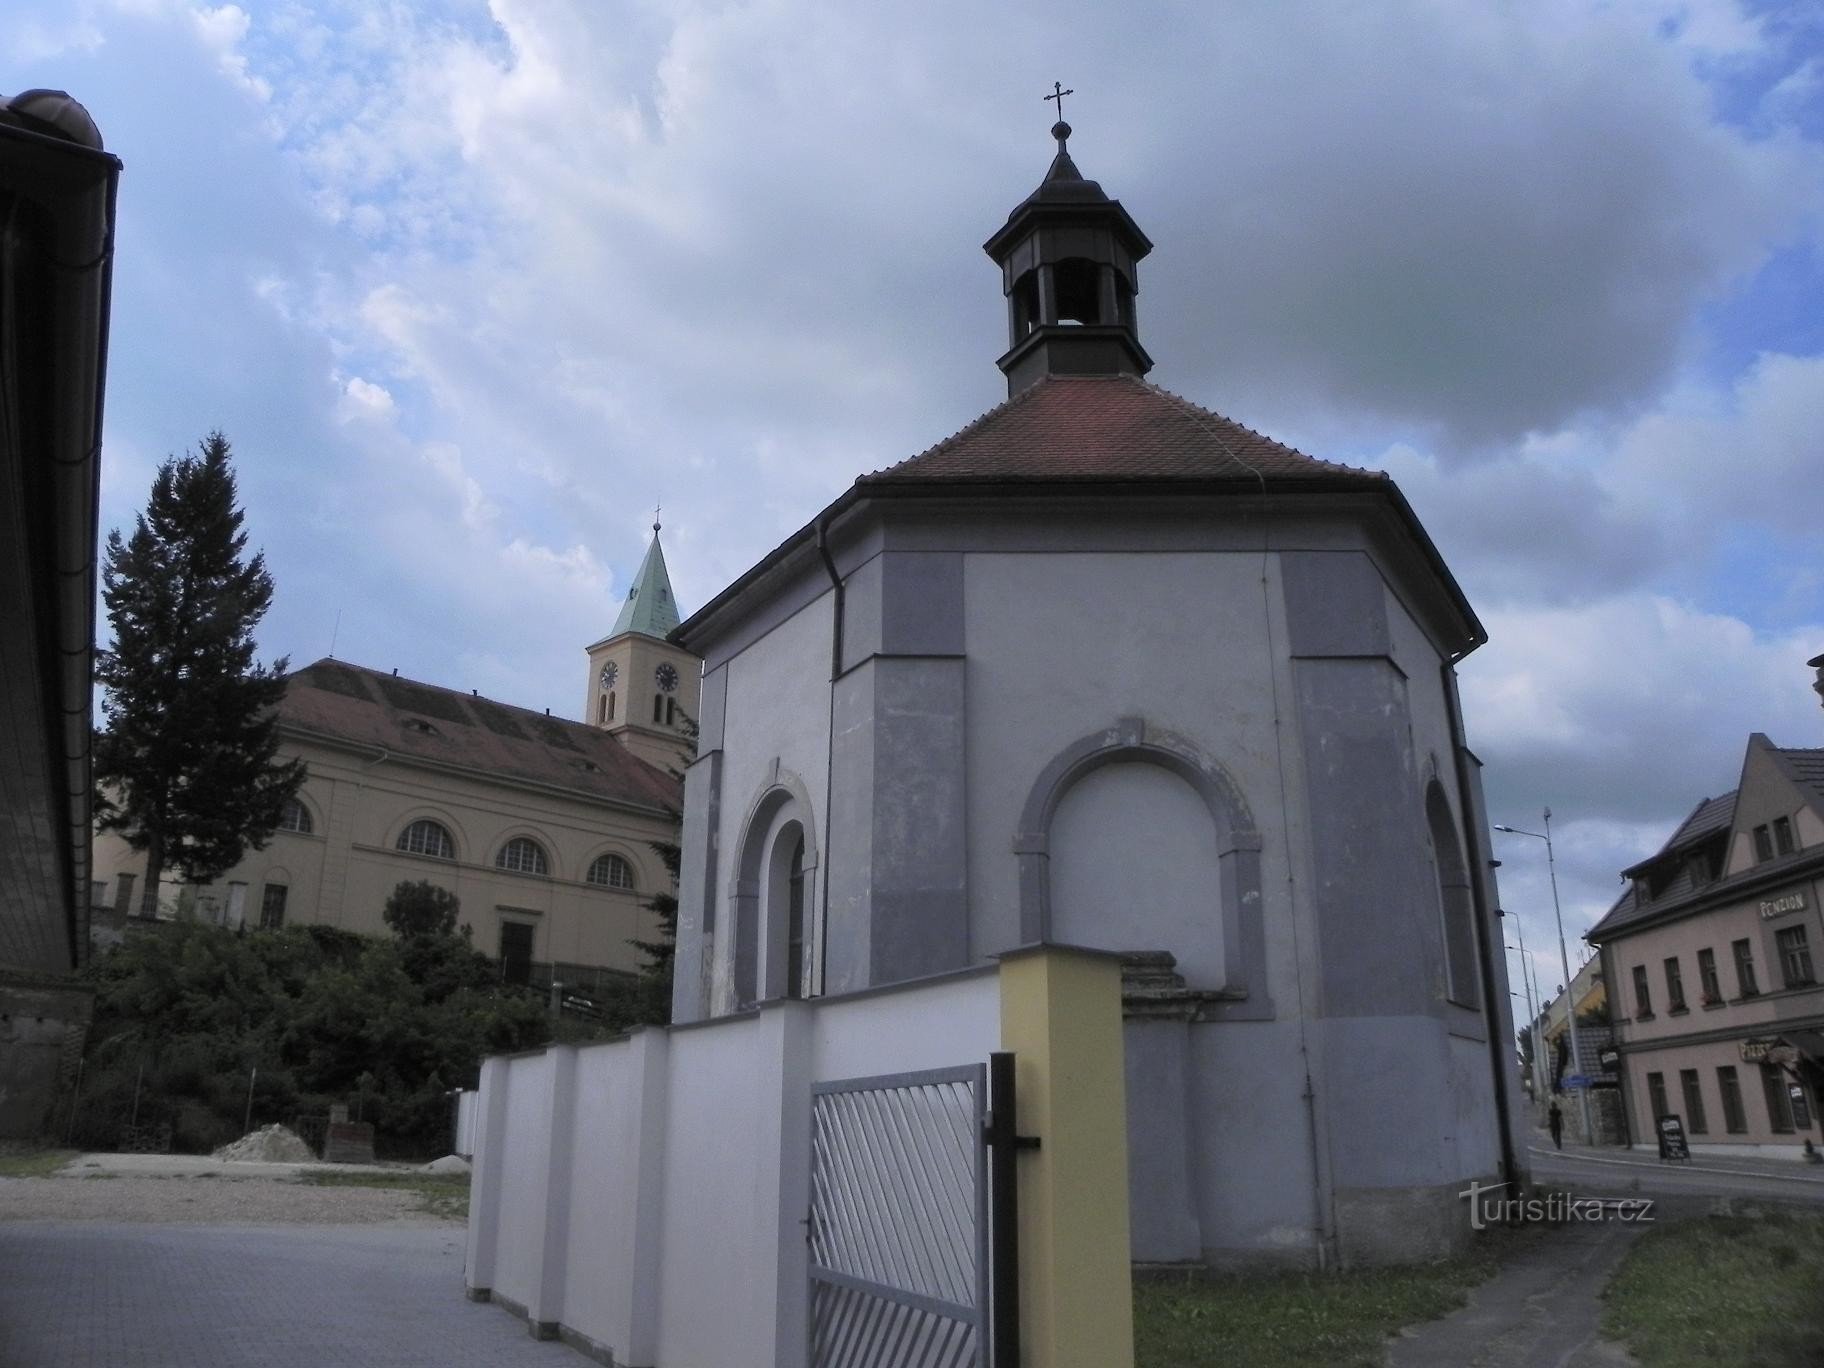 Стод, церковь и часовня св. Вацлав